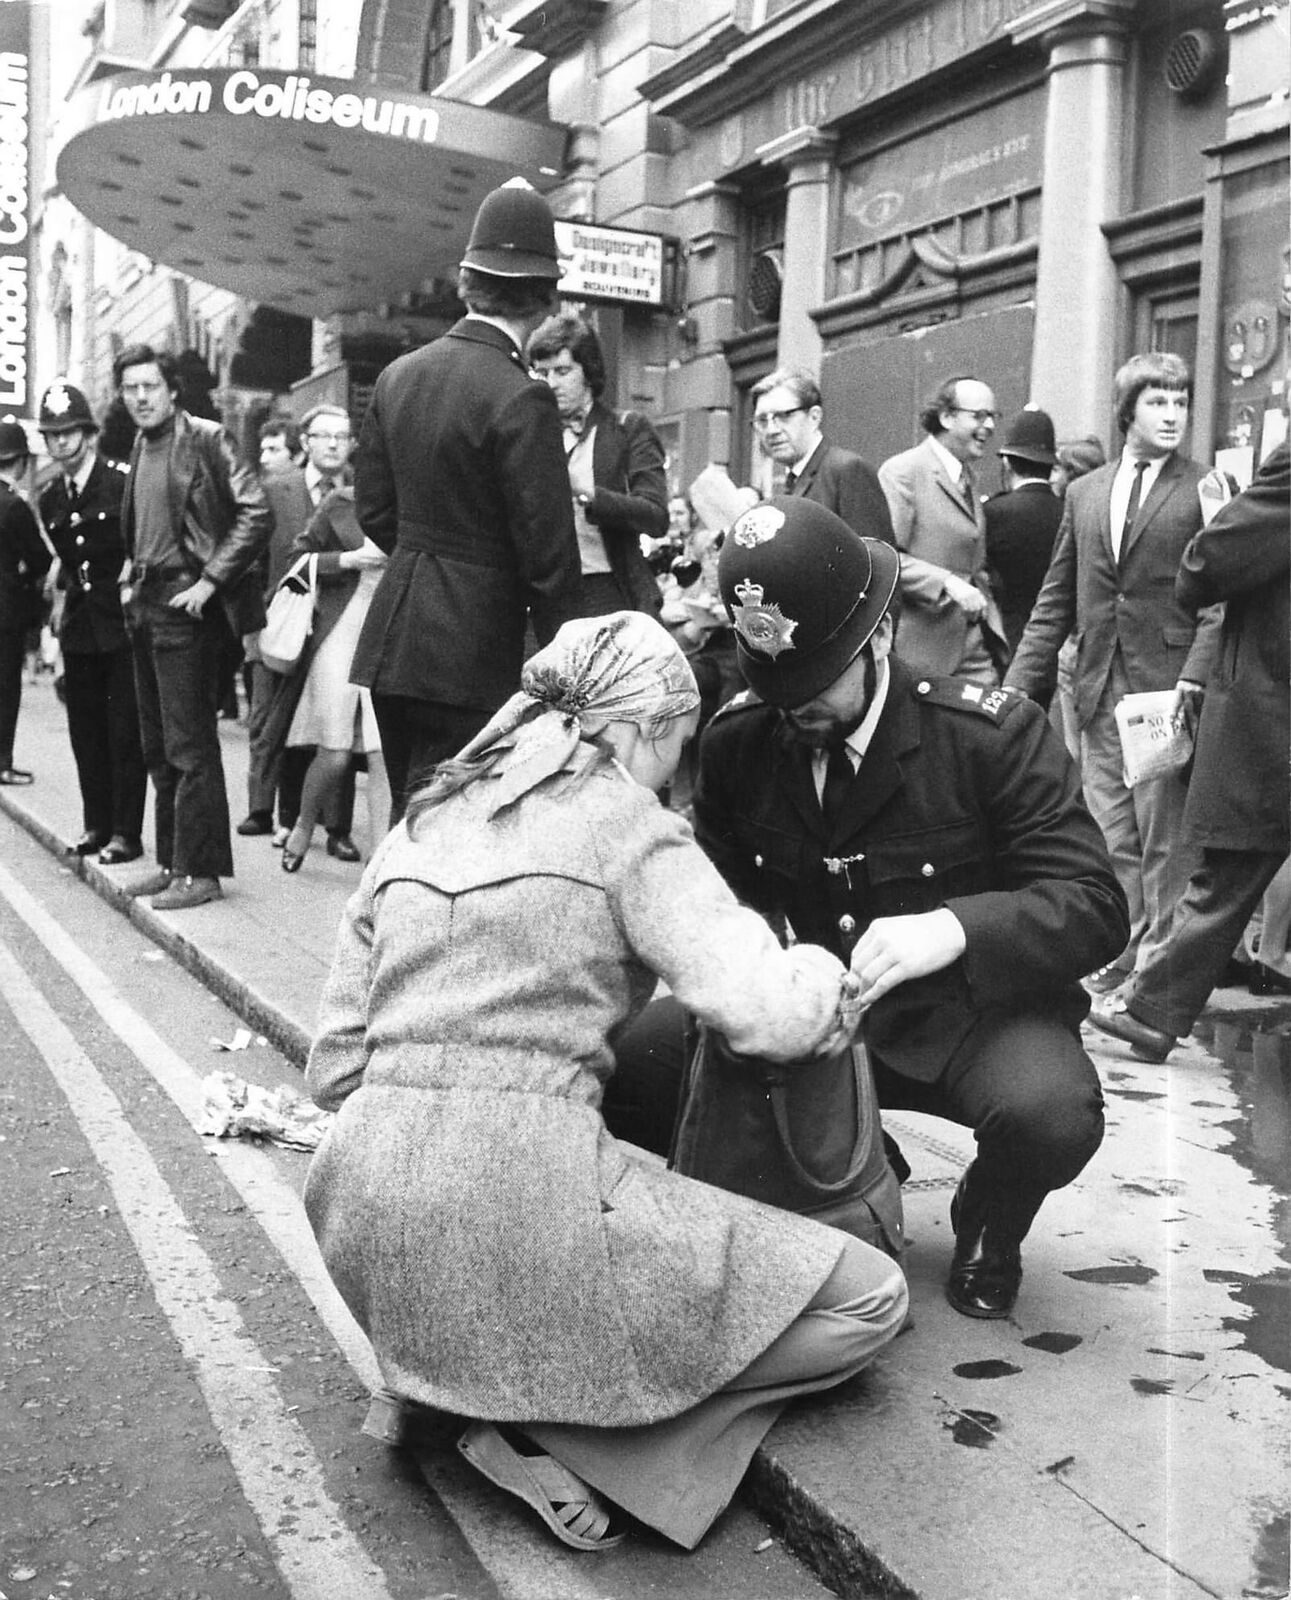 1974 Press Photo Policeman Searching Woman\'s Bag London Coliseum Bolshoi Ballett